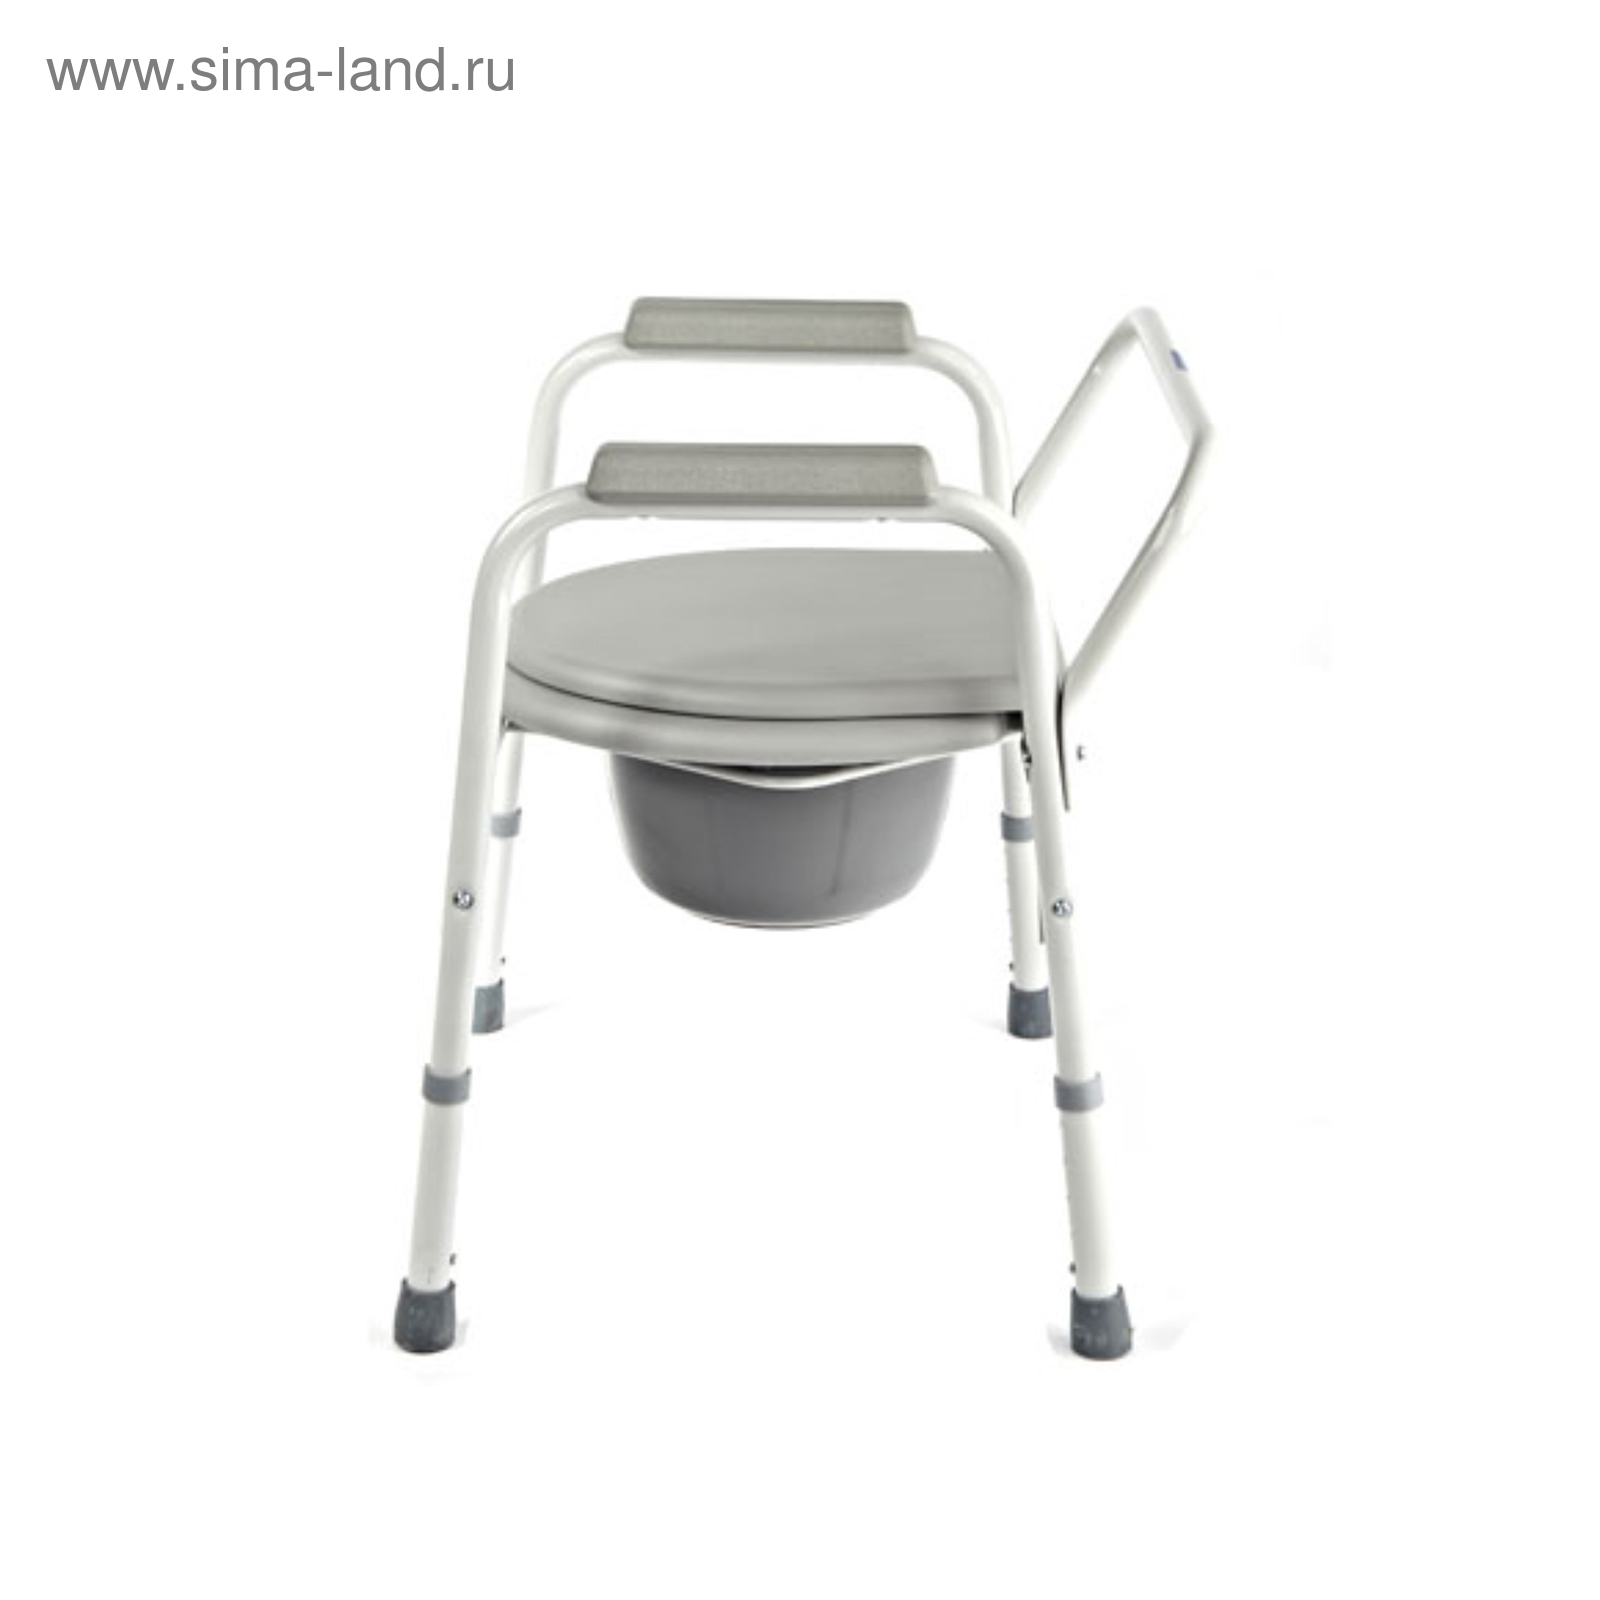 Кресло с санитарным оснащением без колес